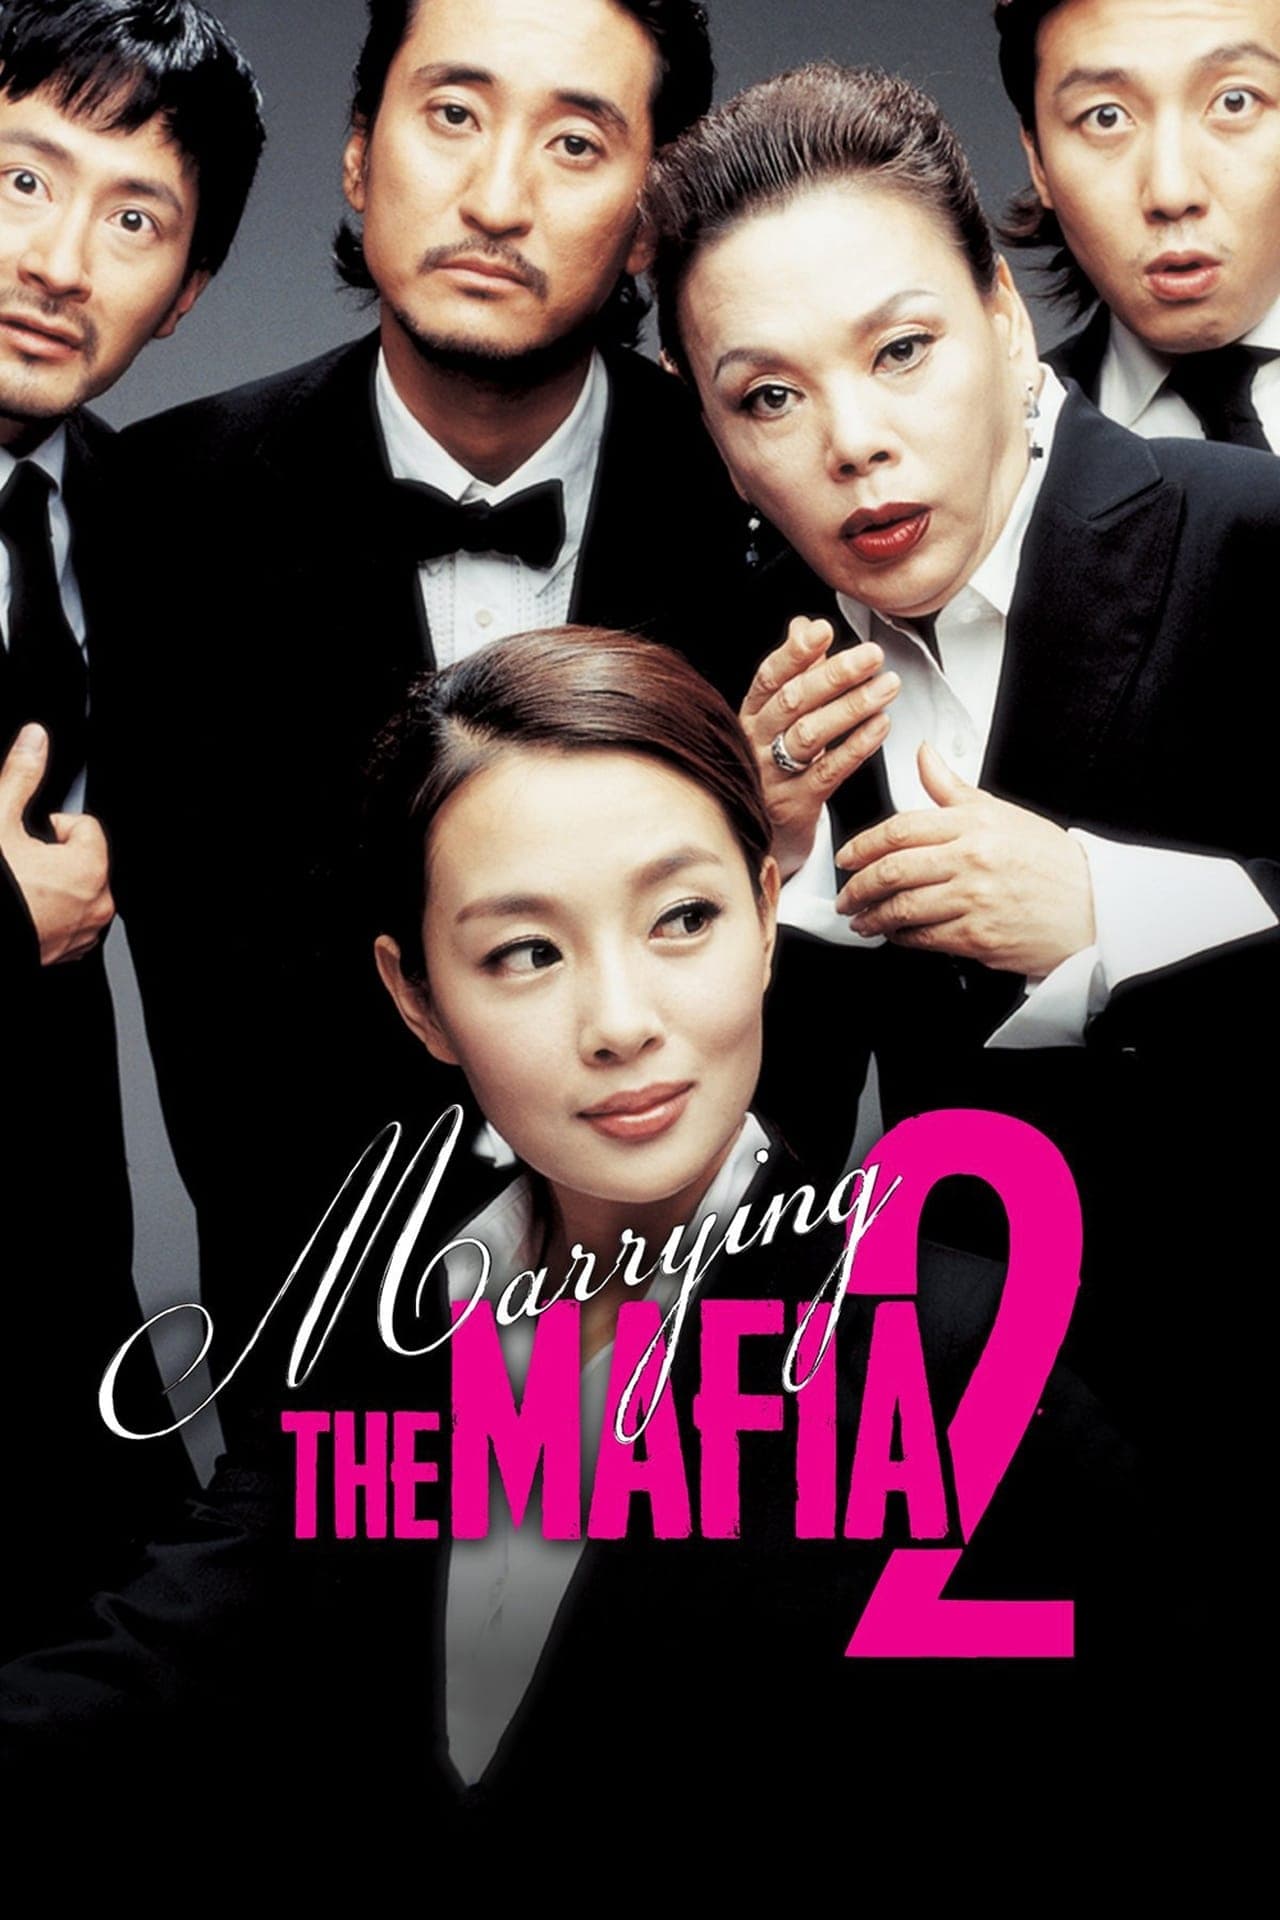 Marrying the Mafia 2: Enemy-in-Law